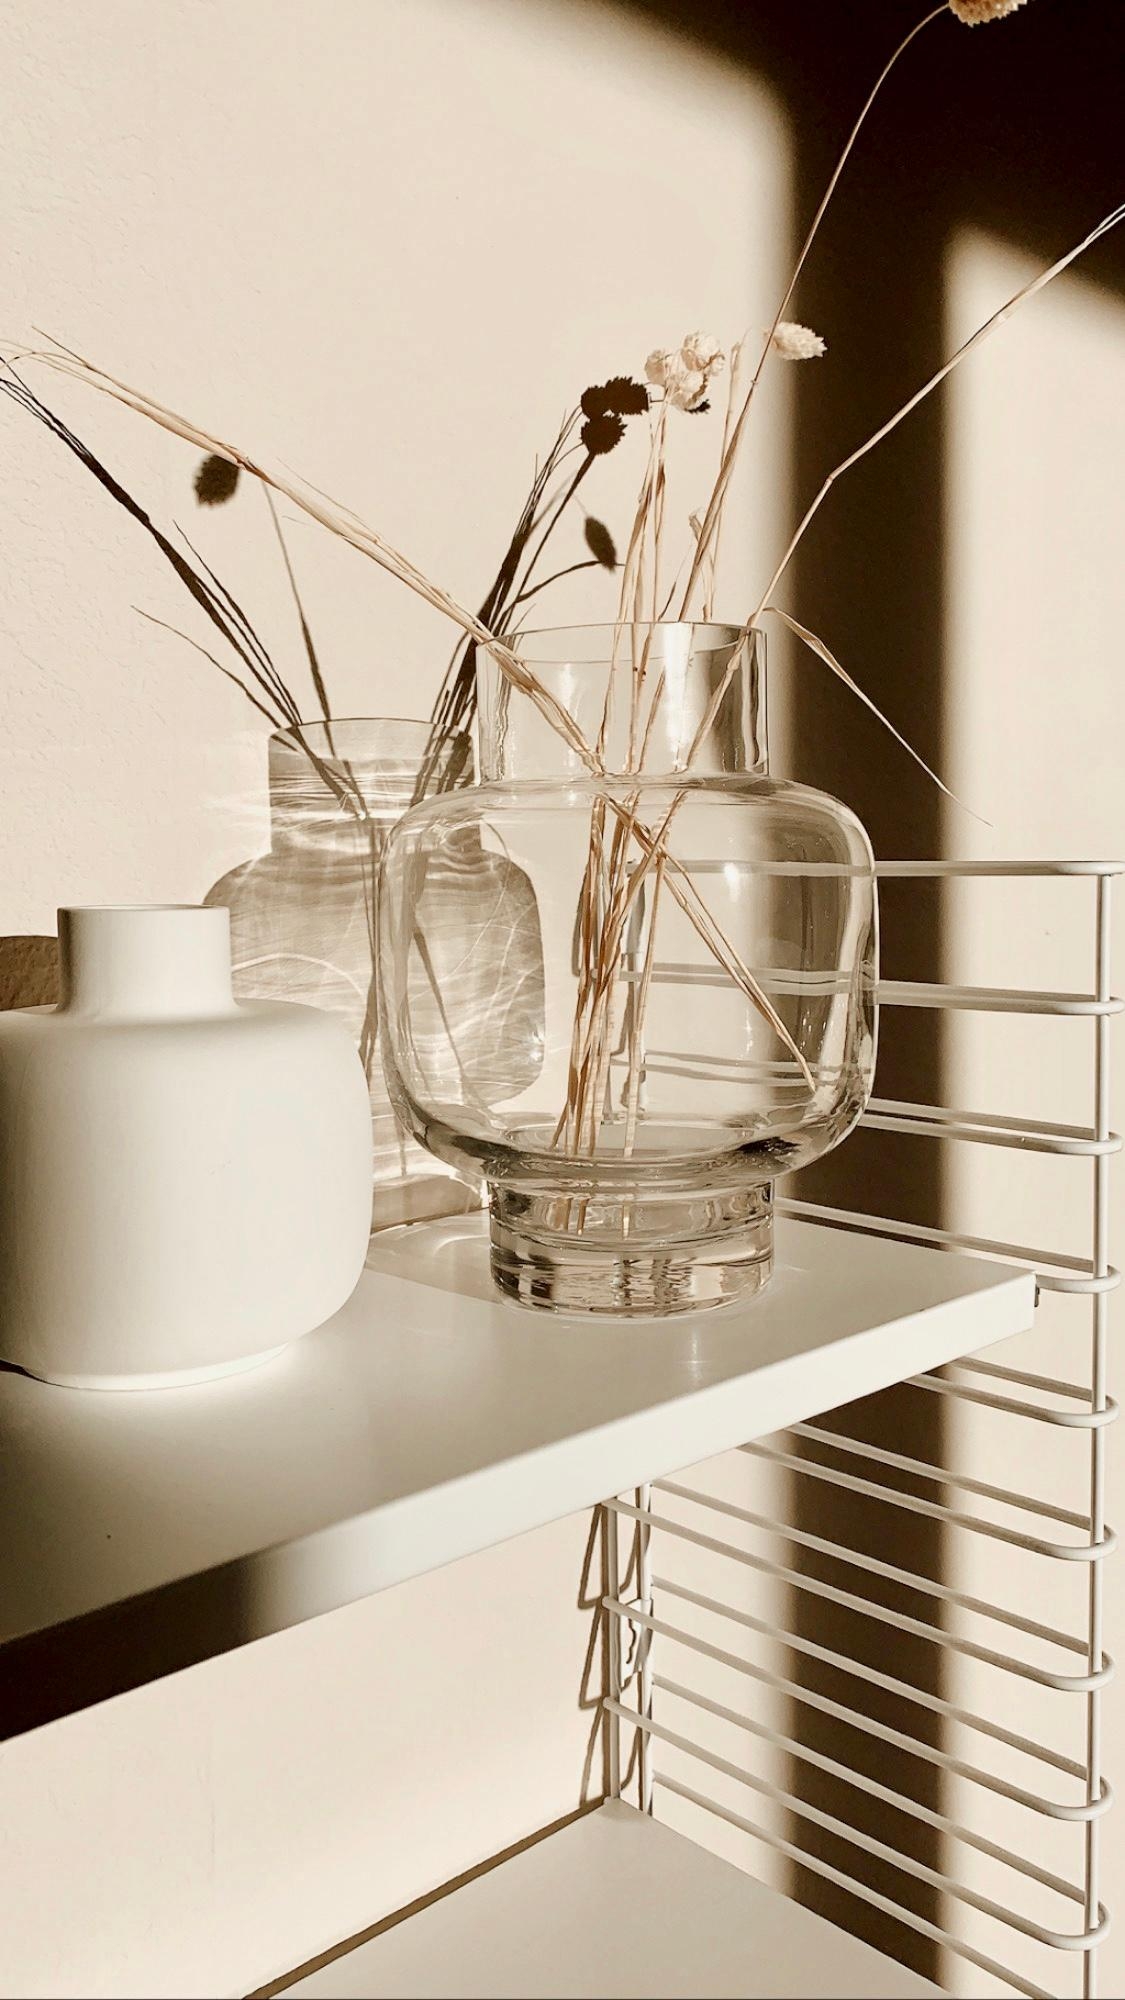 VASENLIEBE

Ich bin ein totaler Vasenliebhaber

#vasenlover #interior #scandinavian #minimalism